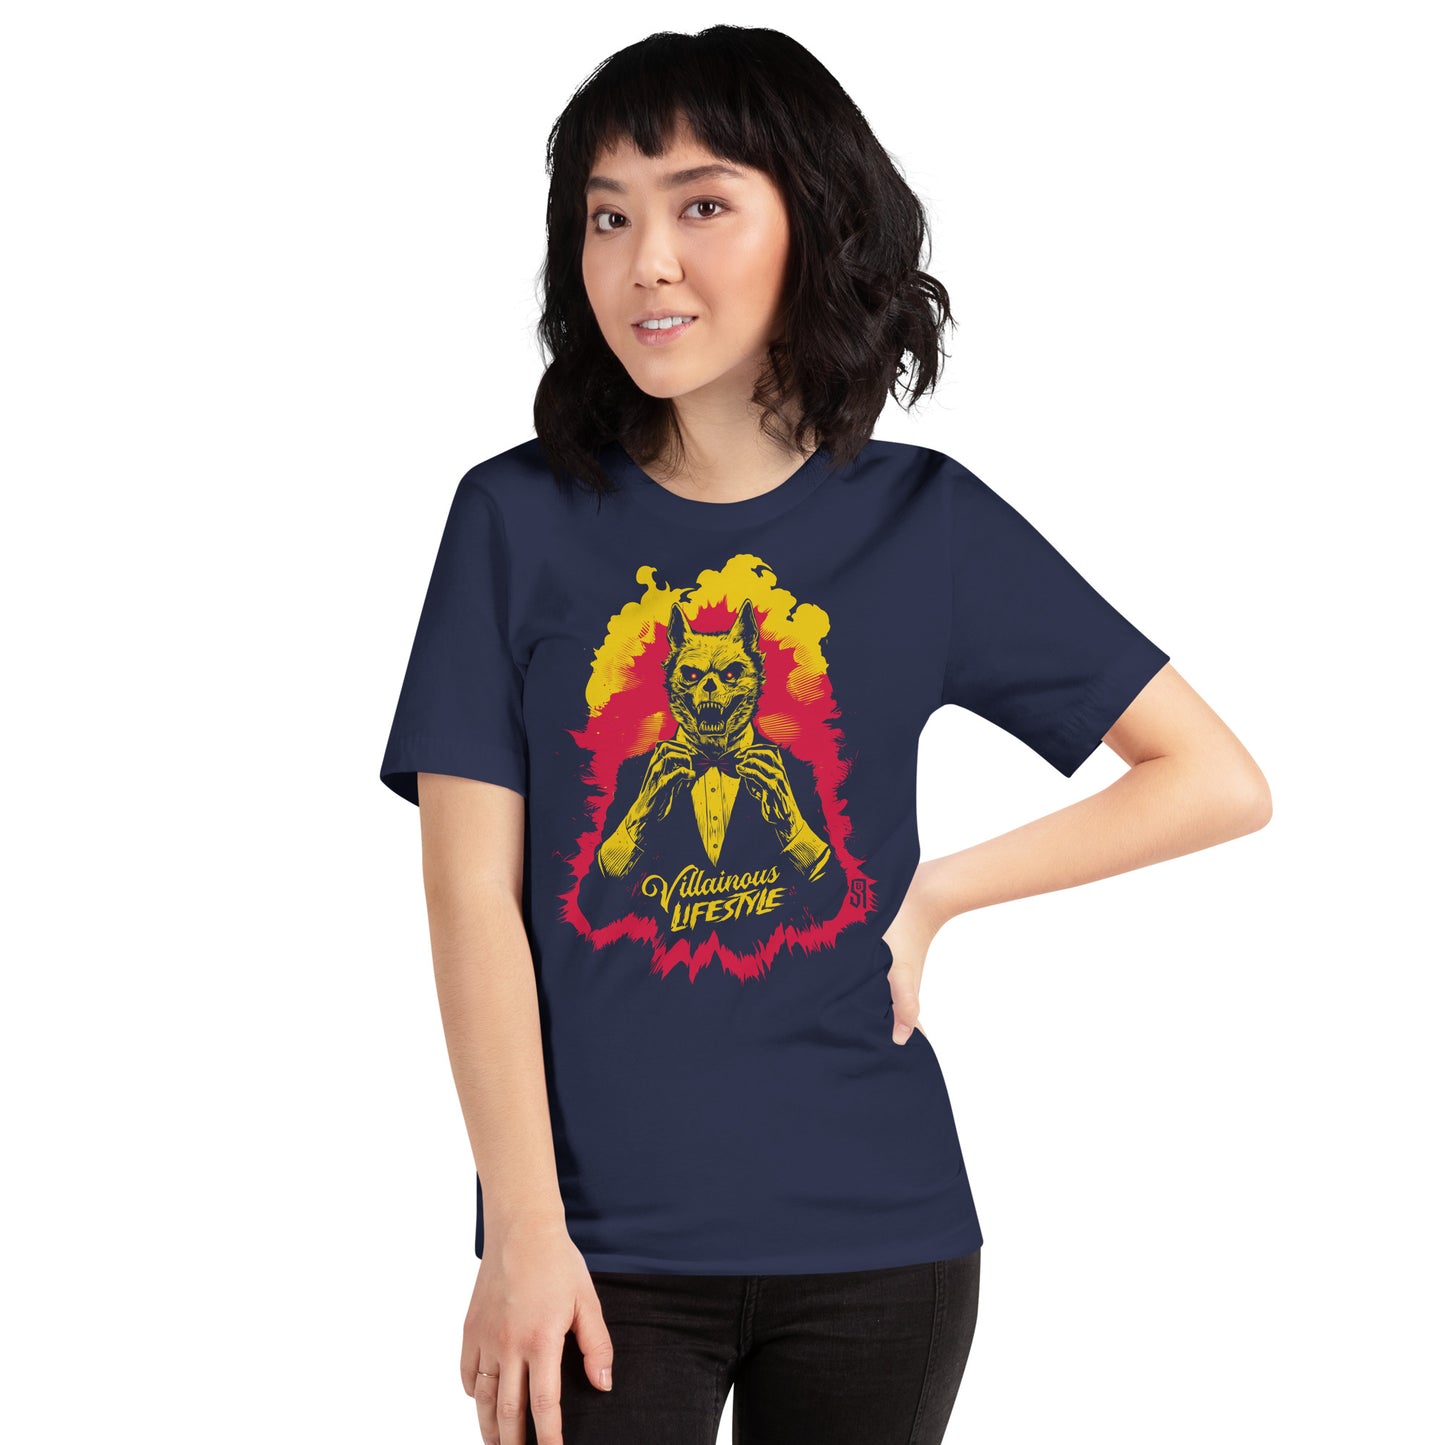 Villainous Lifestyle Wolves Unisex Retail Fit T-Shirt